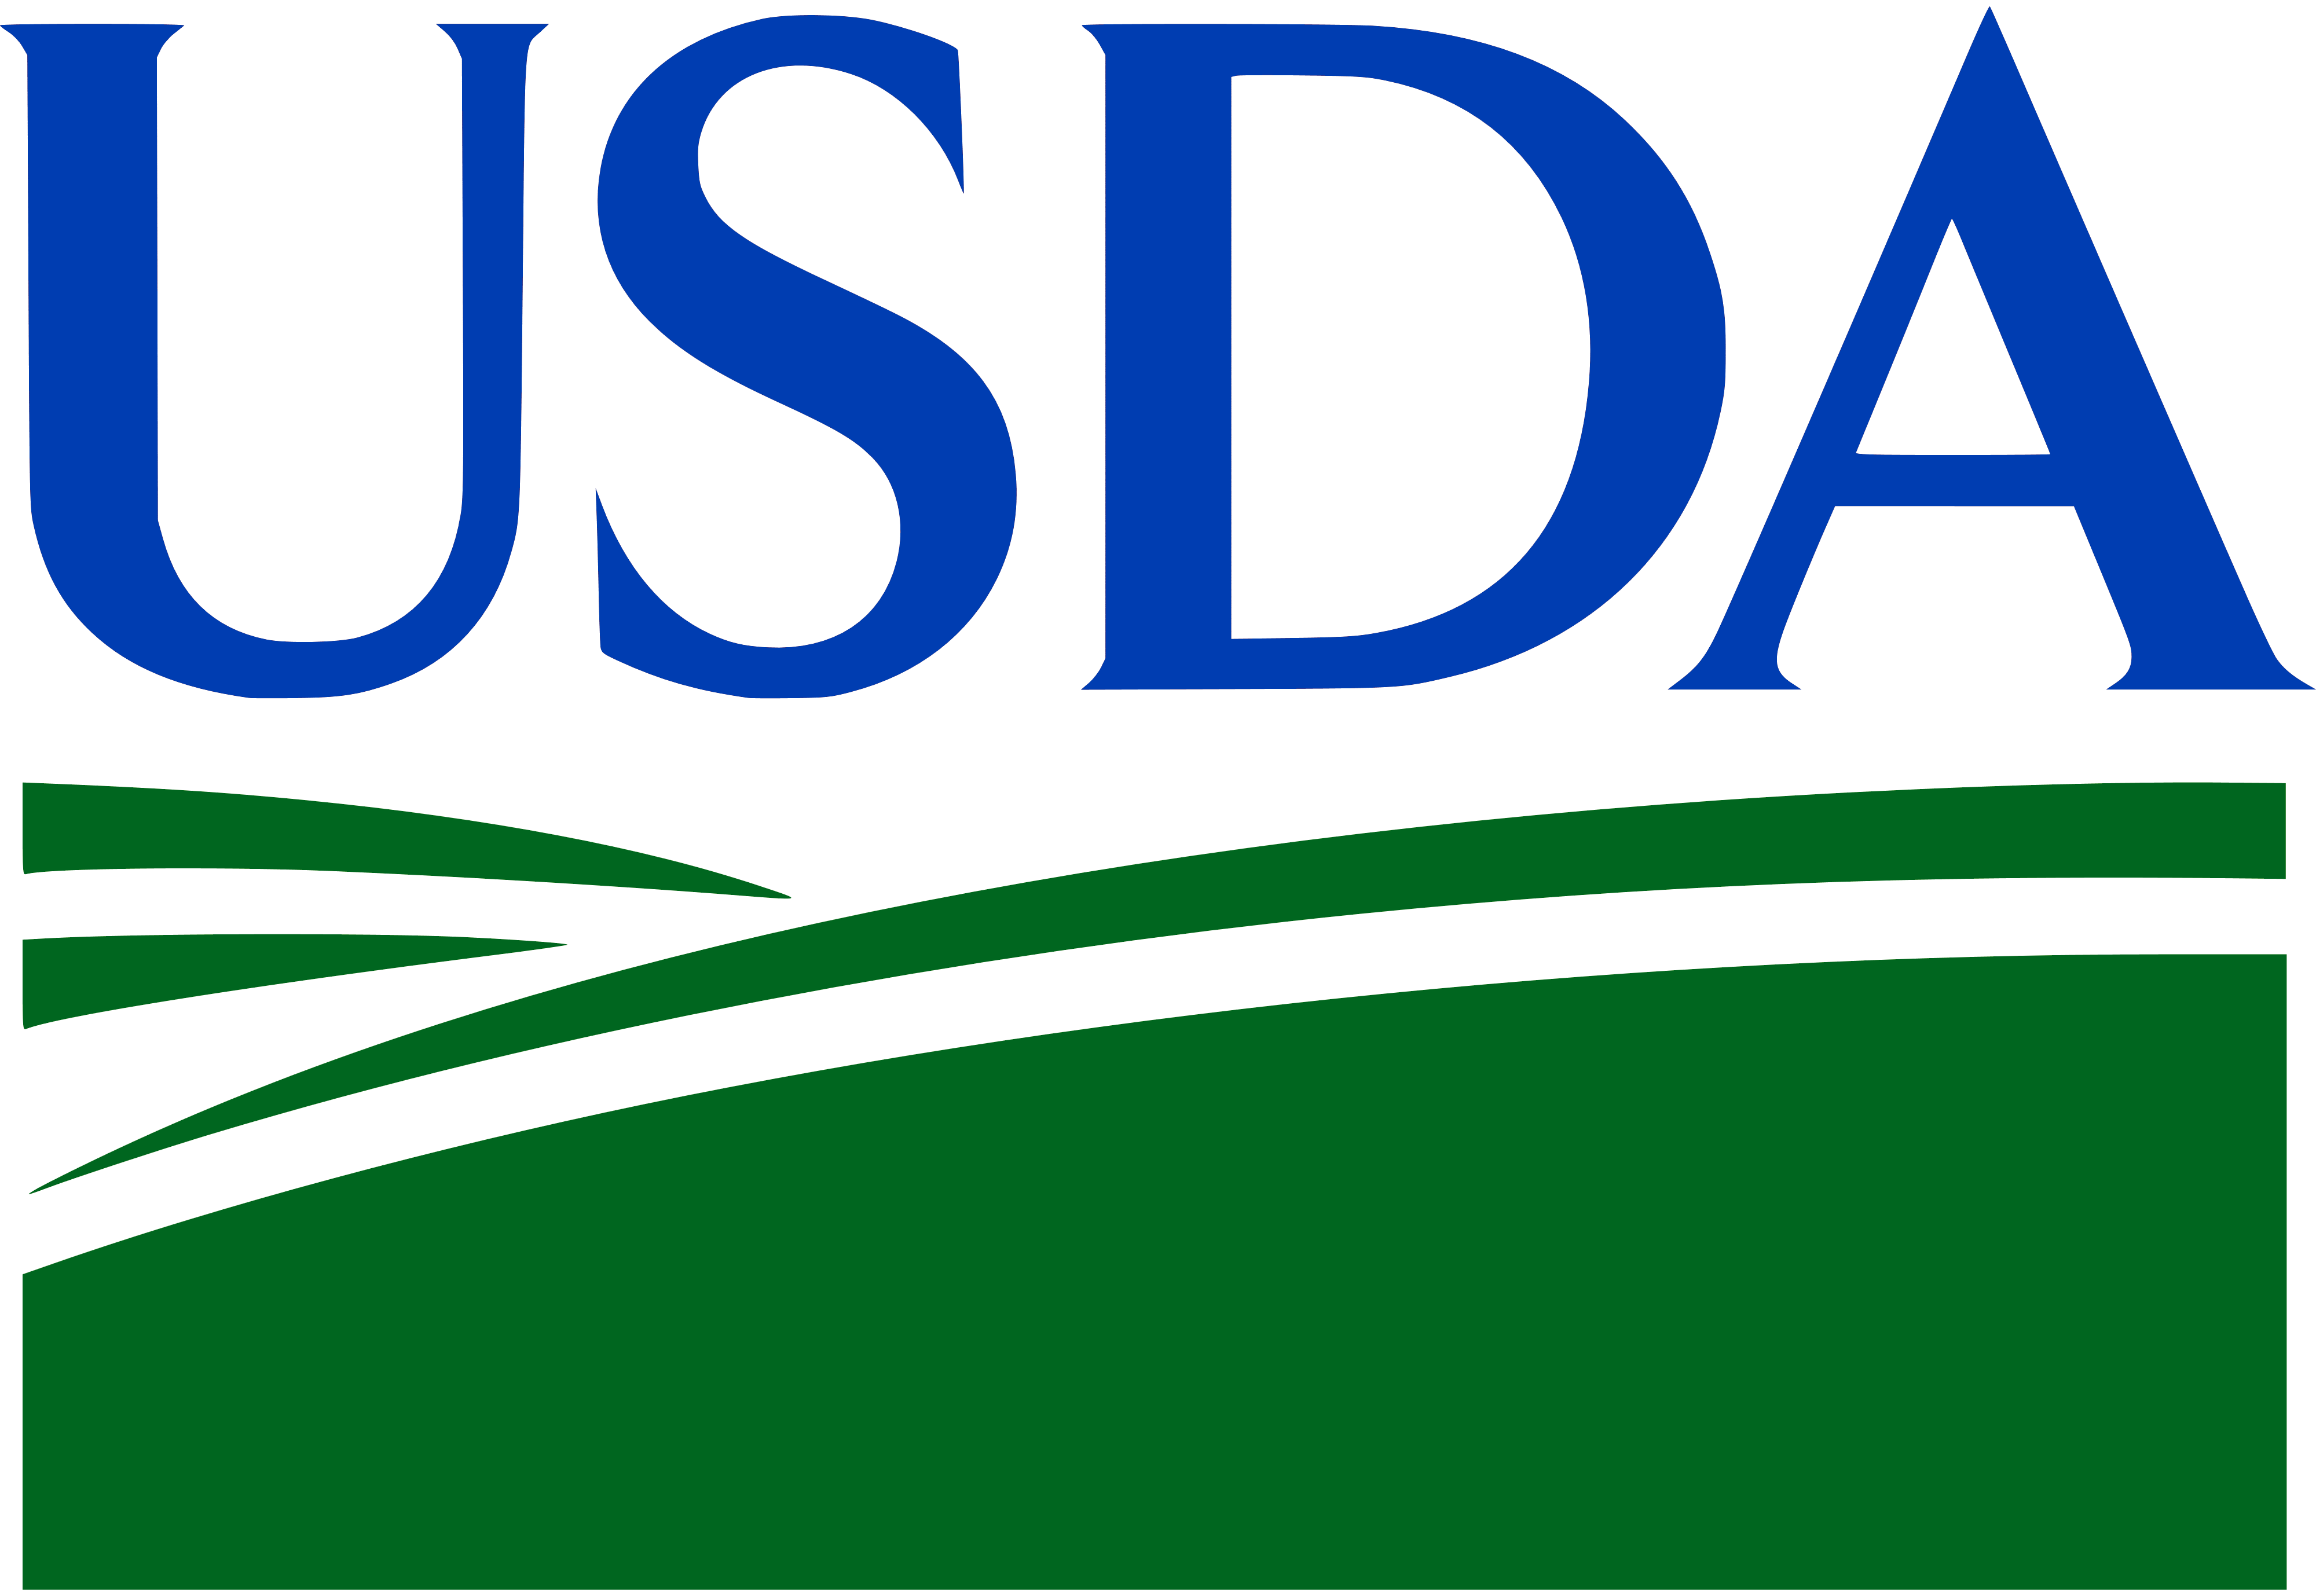 Image of the USDA logo